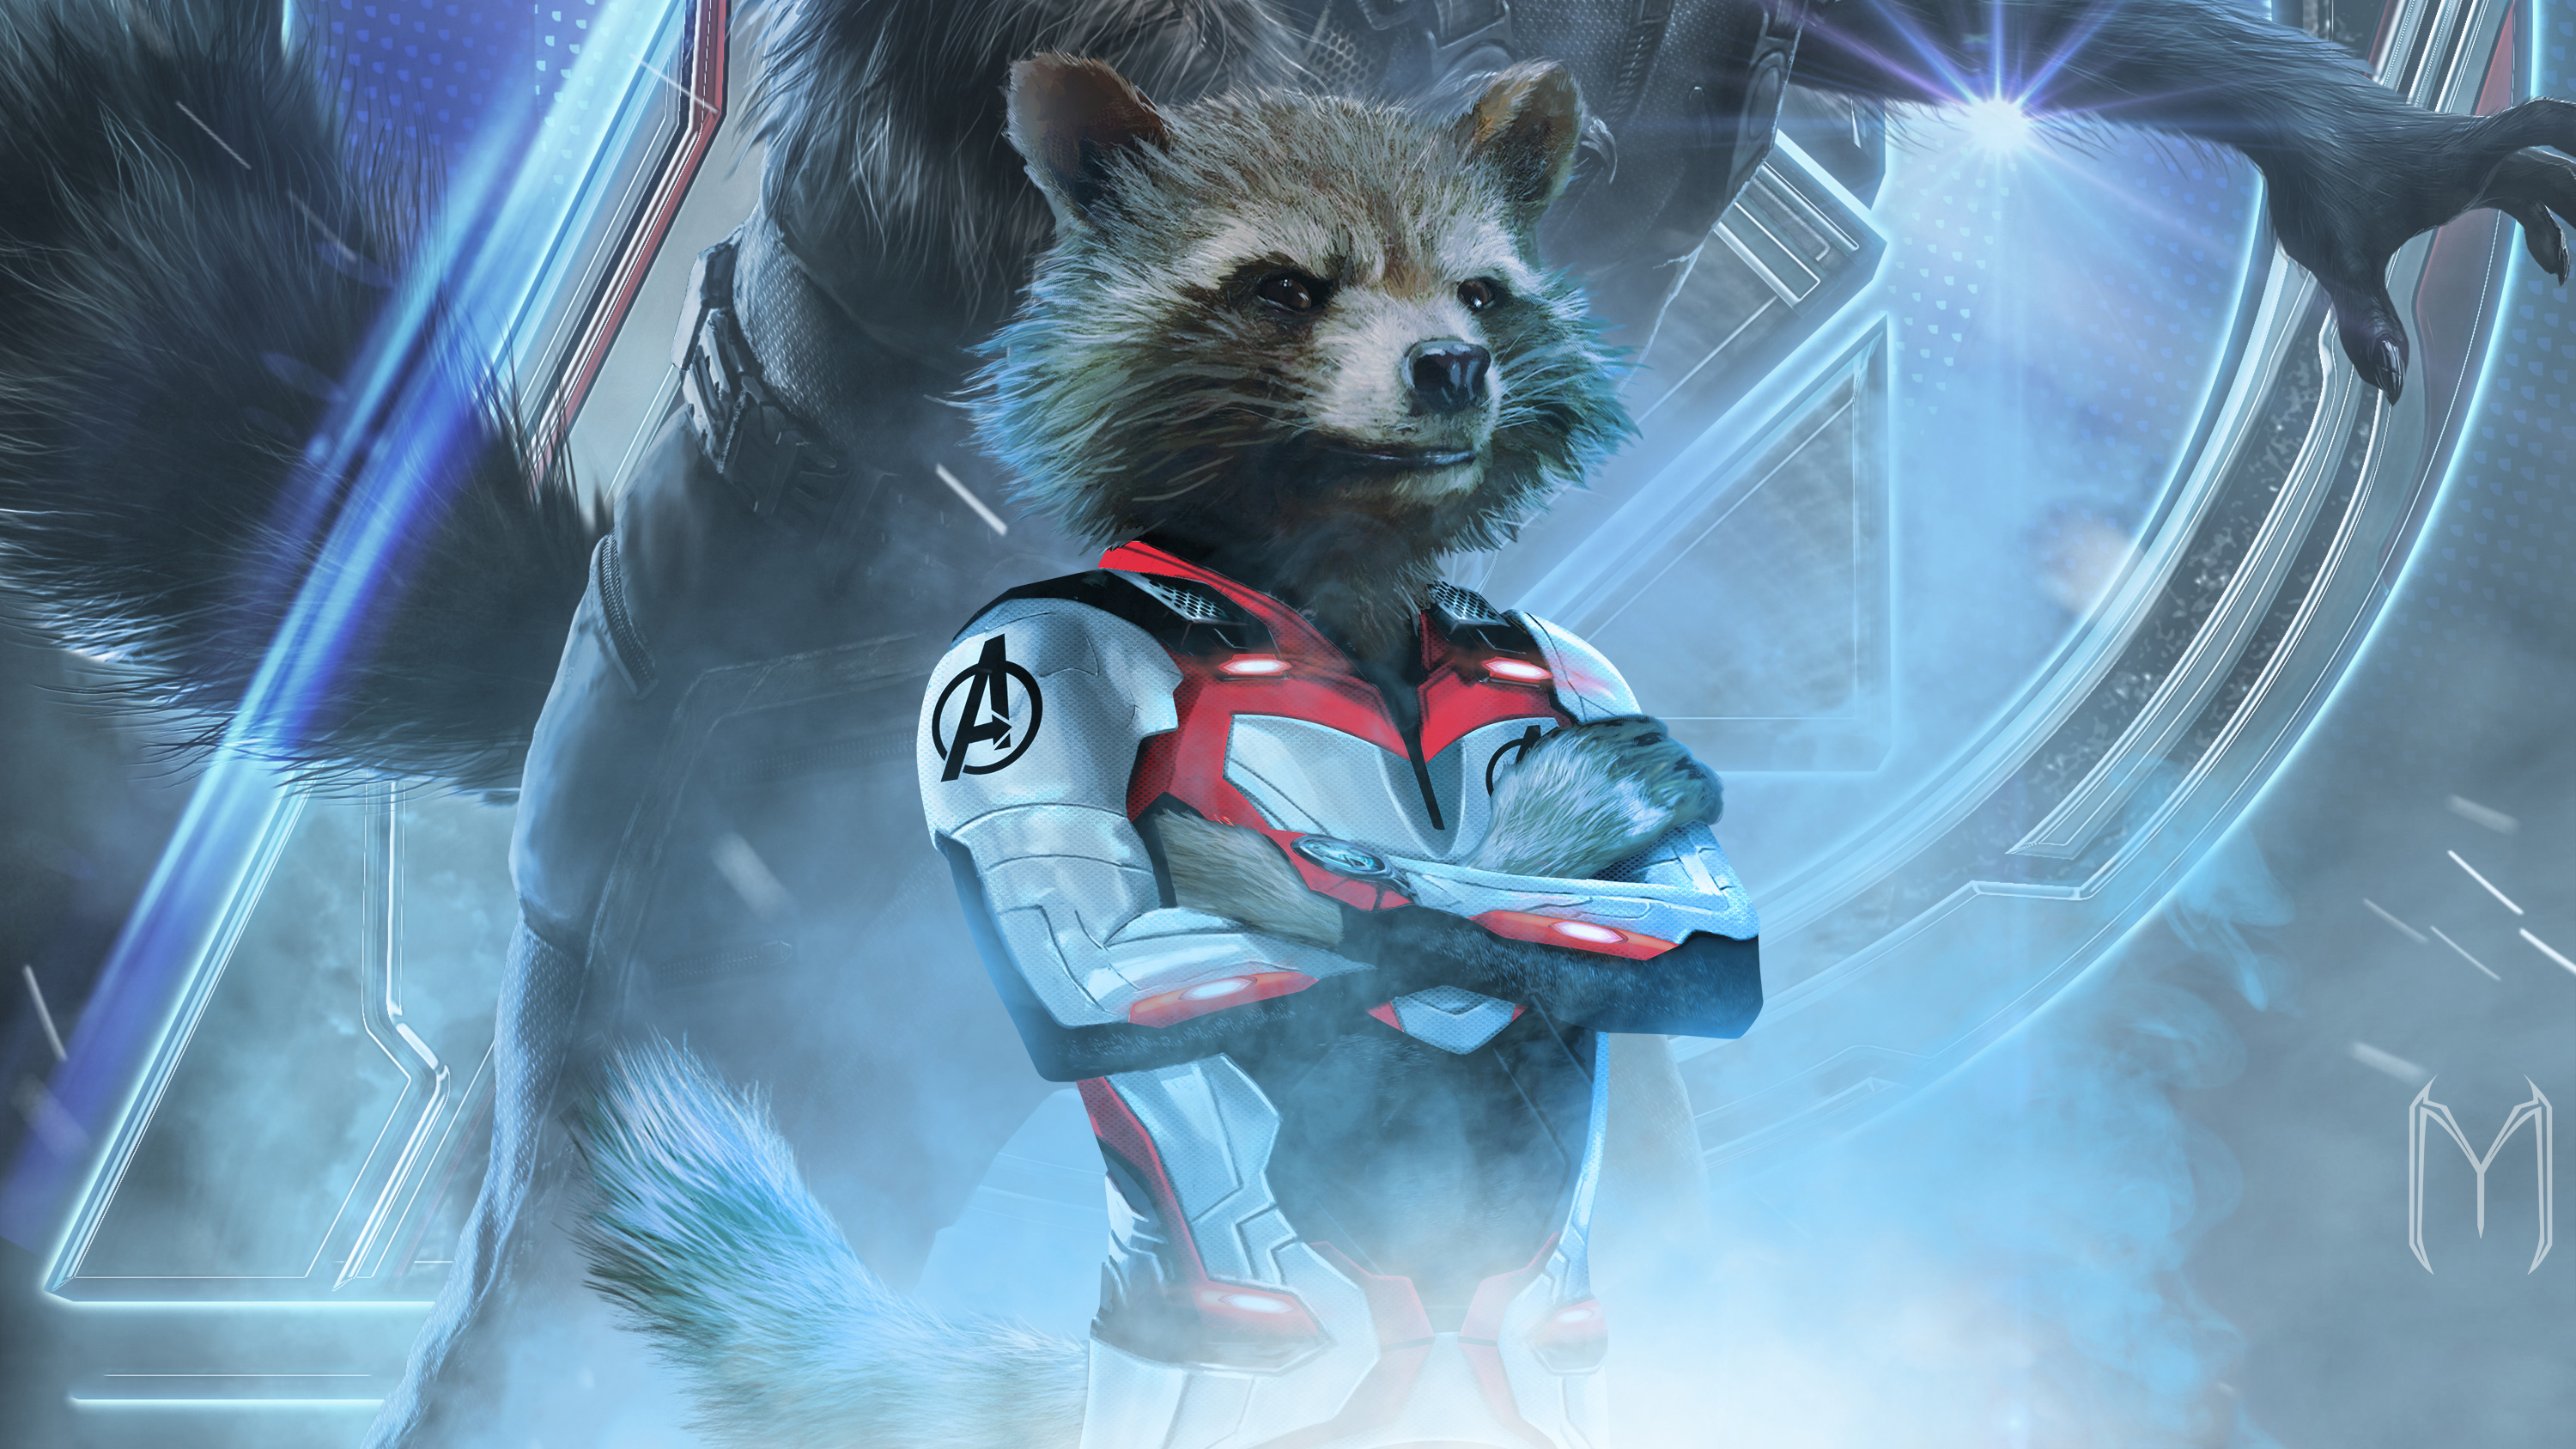 Rocket Raccoon In Avengers Endgame 2019, HD Movies, 4k 